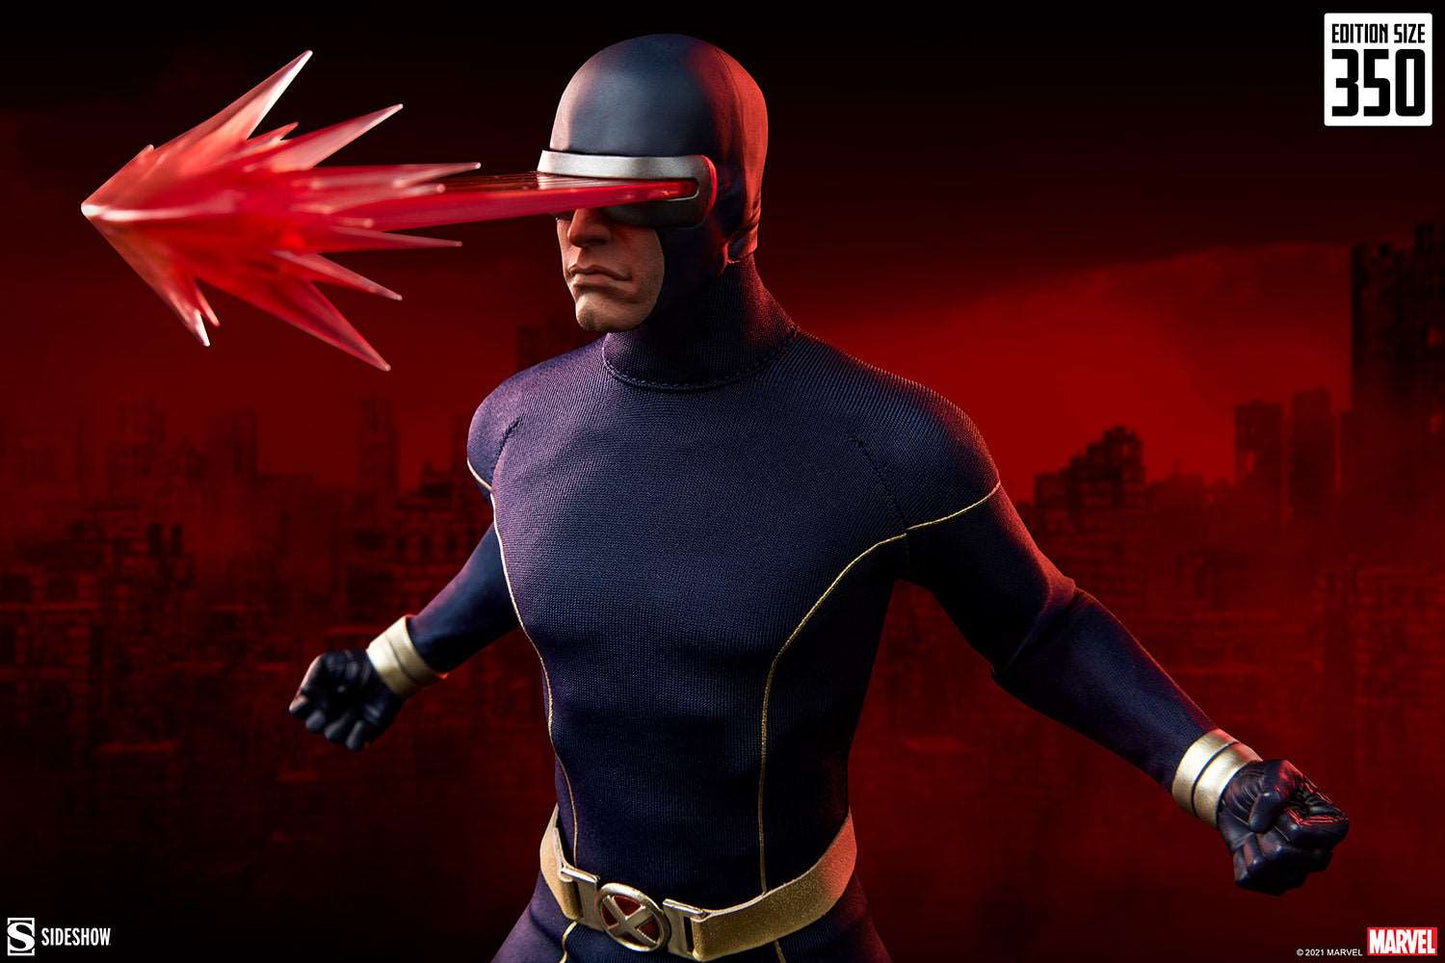 Sideshow Marvel Cyclops Astonishing X-Men One Sixth Scale Figure with optic blast effect